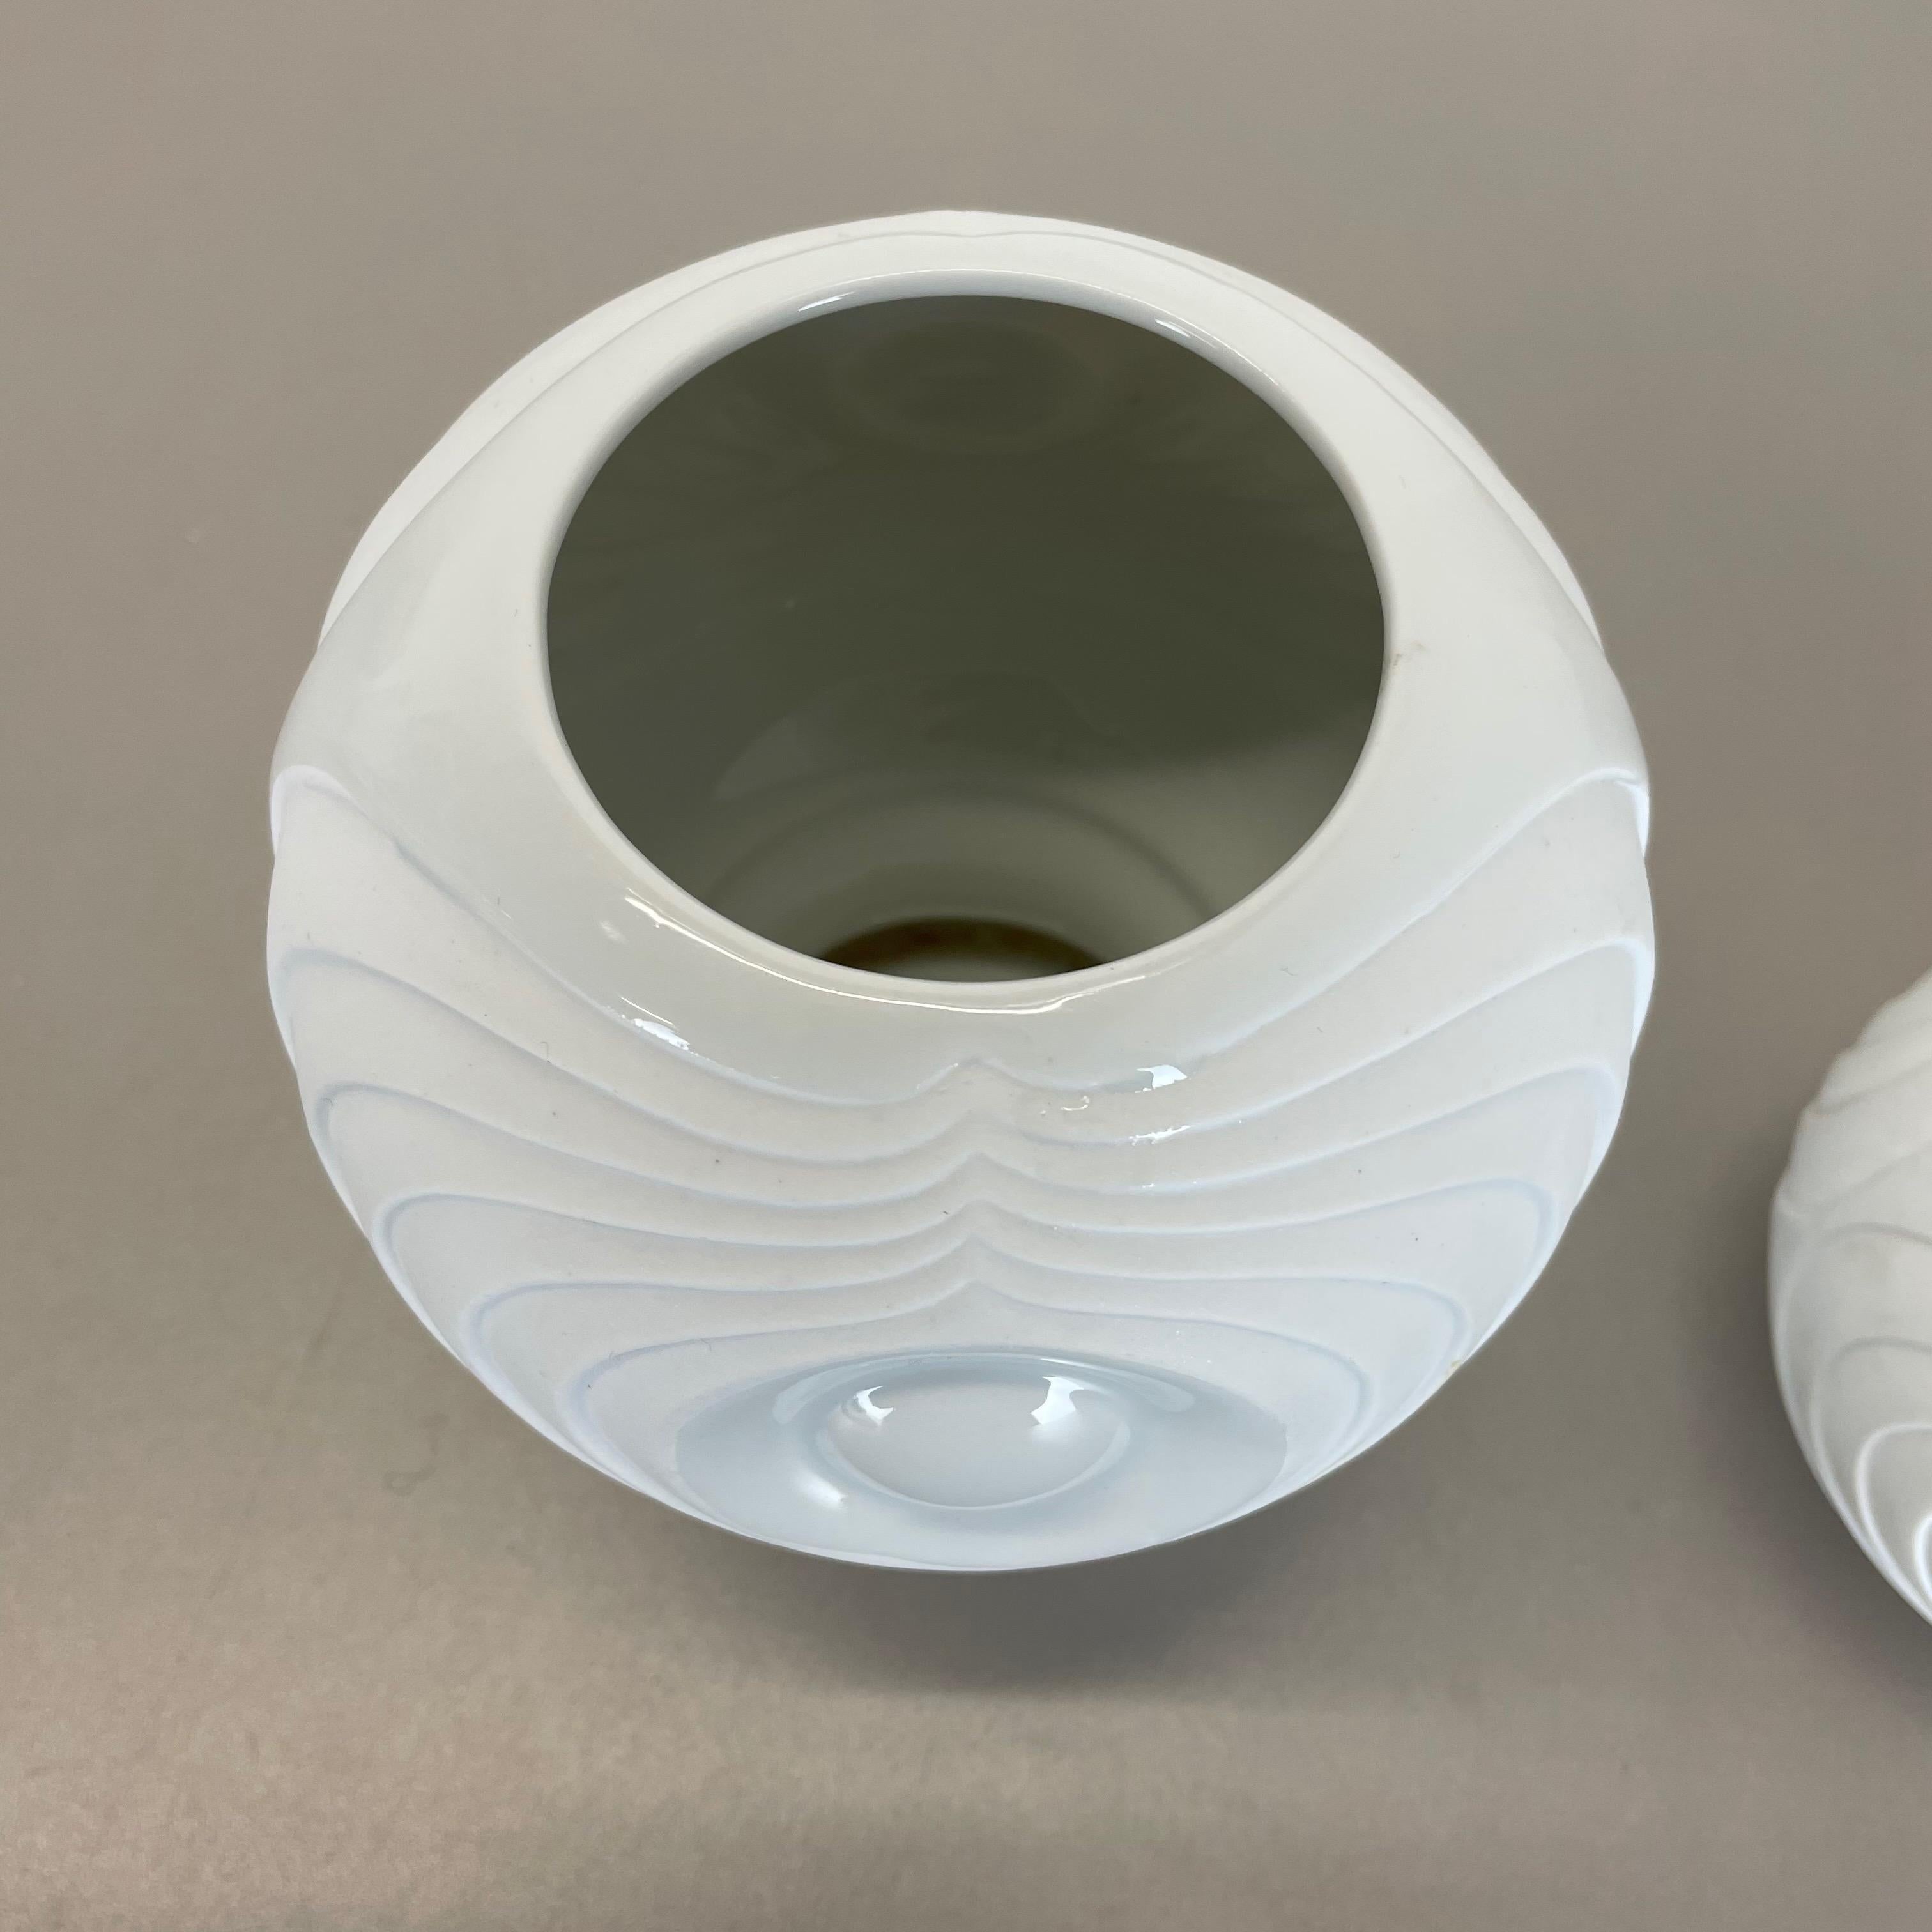 Set of 2 Original Porcelain OP Art Vase Made by Royal Bavaria KPM Germany, 1970s For Sale 2